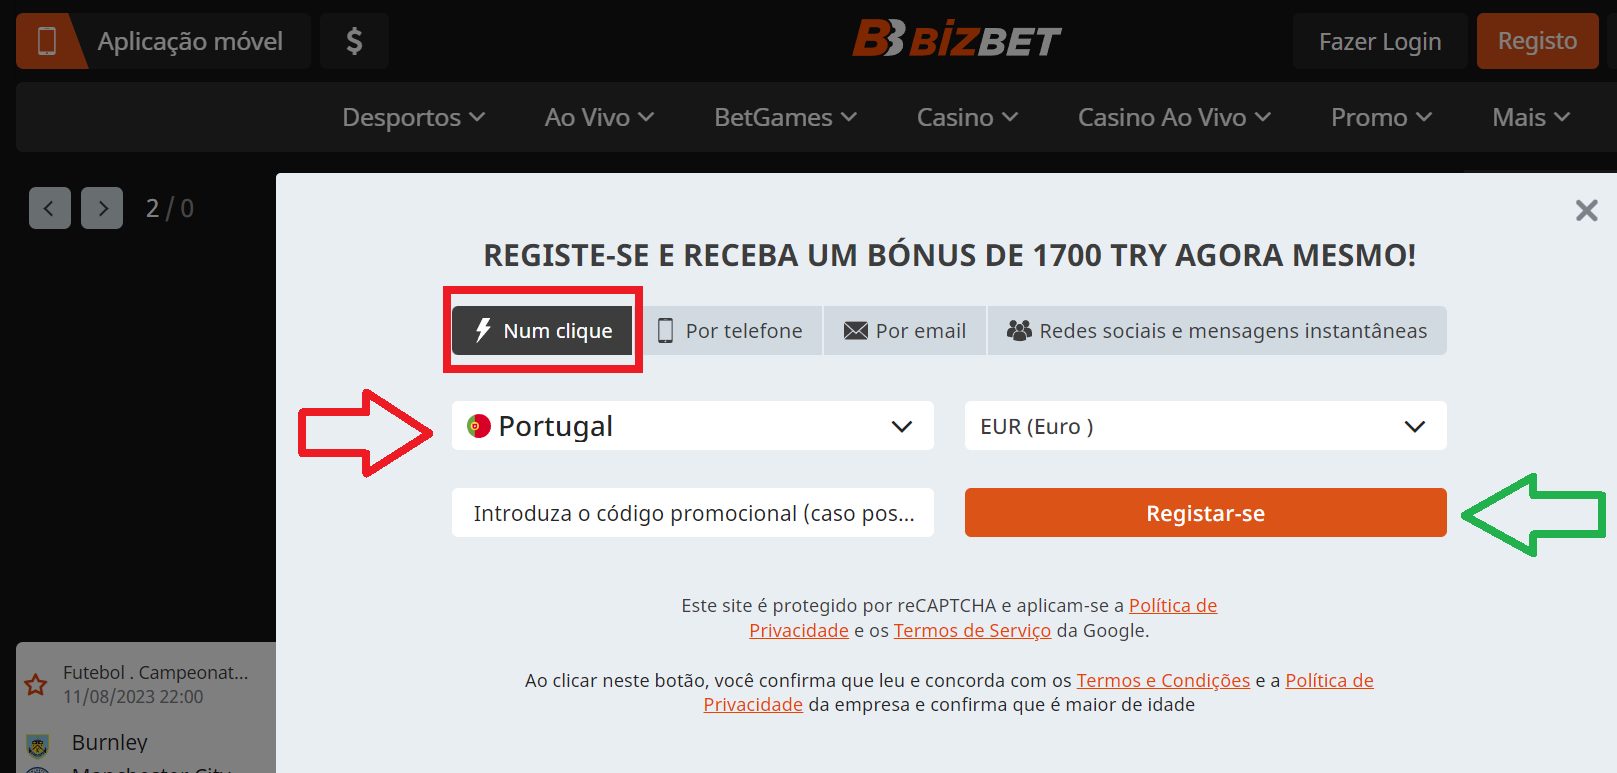 Bizbet Portugal registro em 1 clique